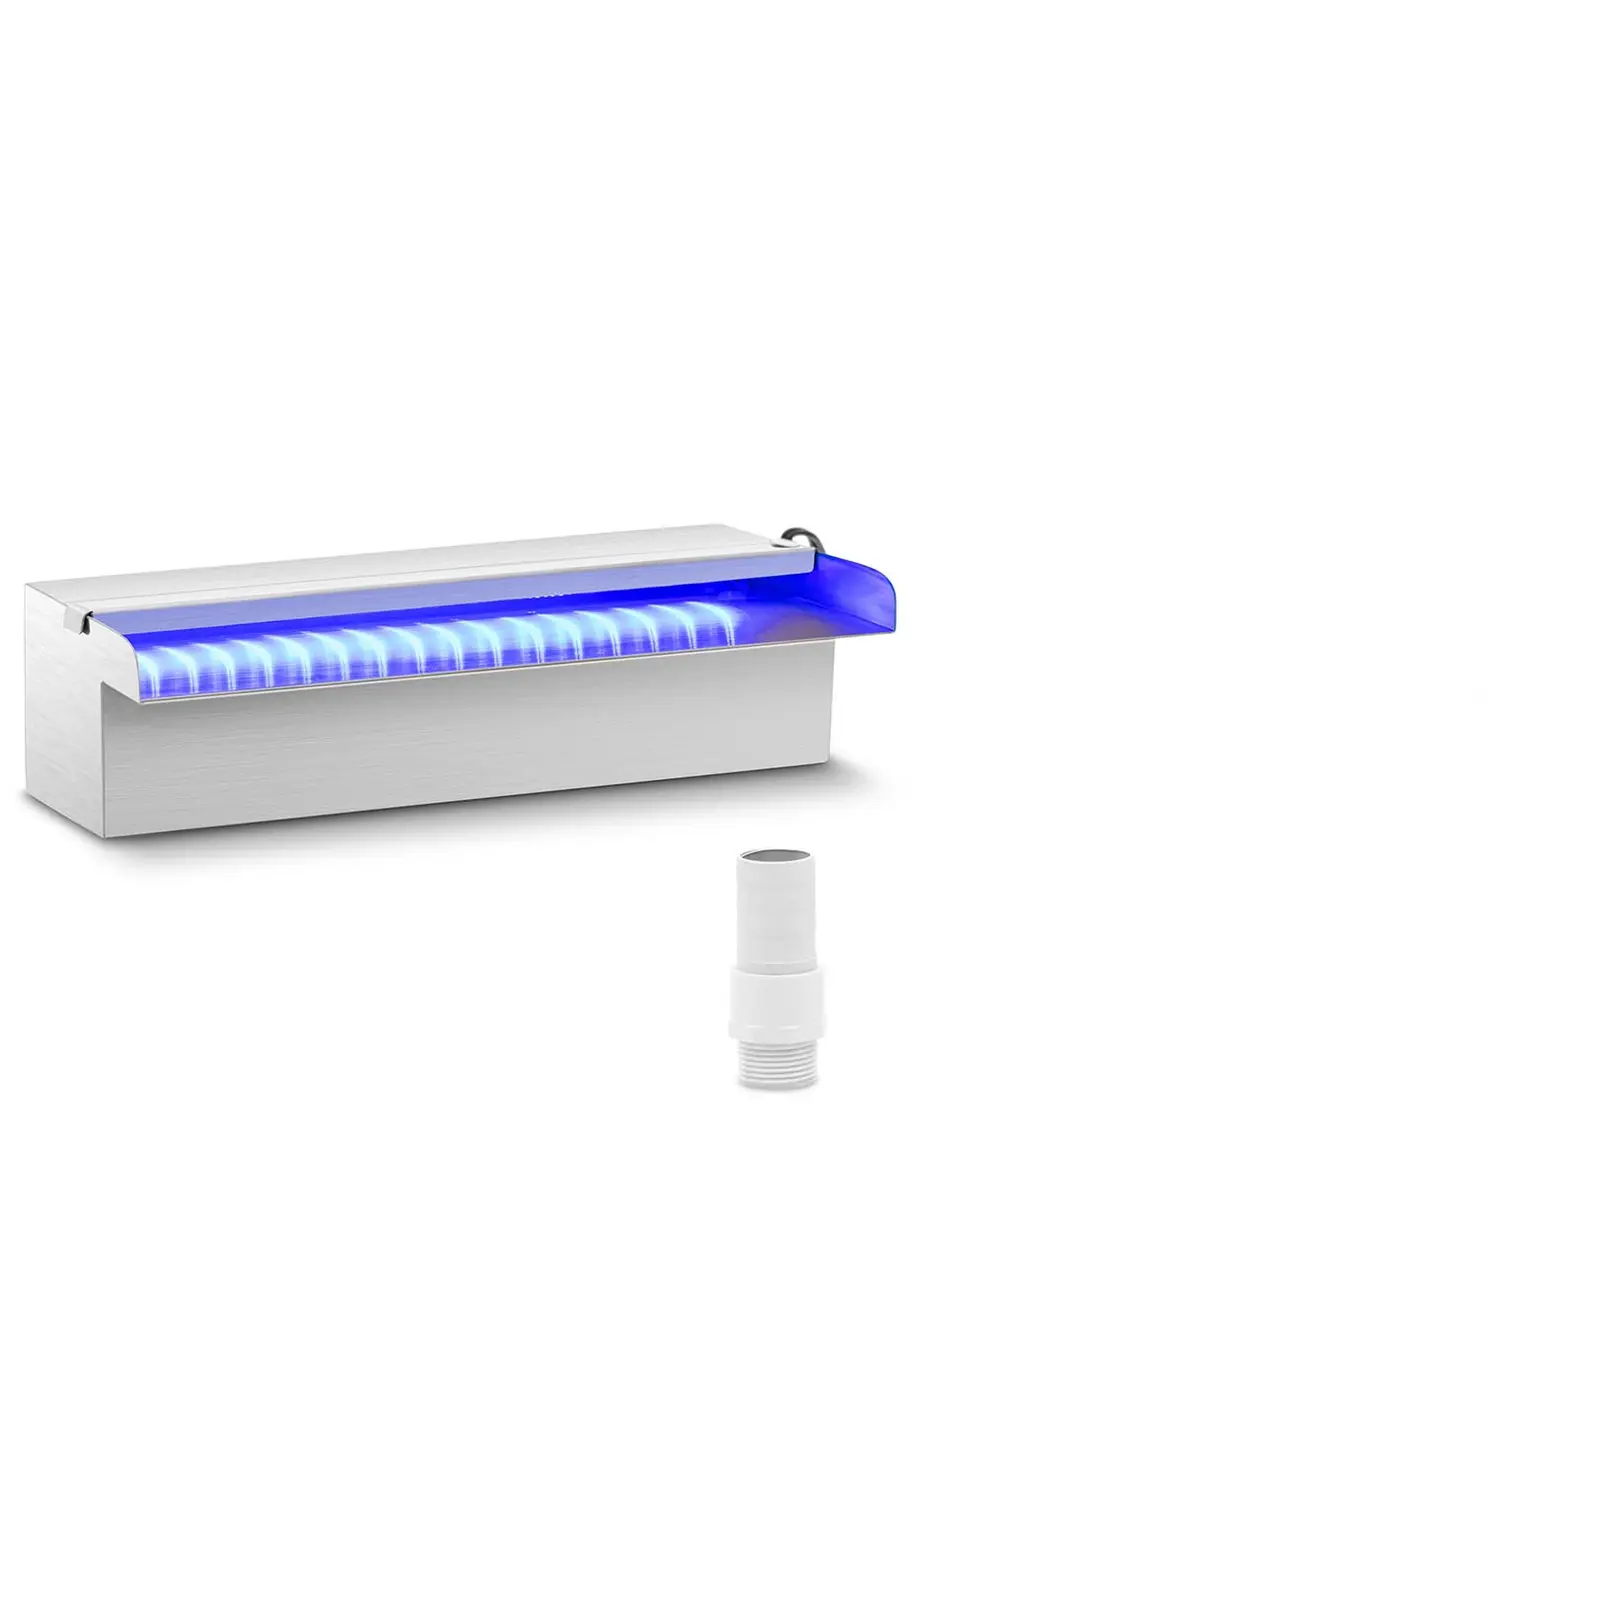 Douche - 30 cm - LED verlichting - Blauw / Wit